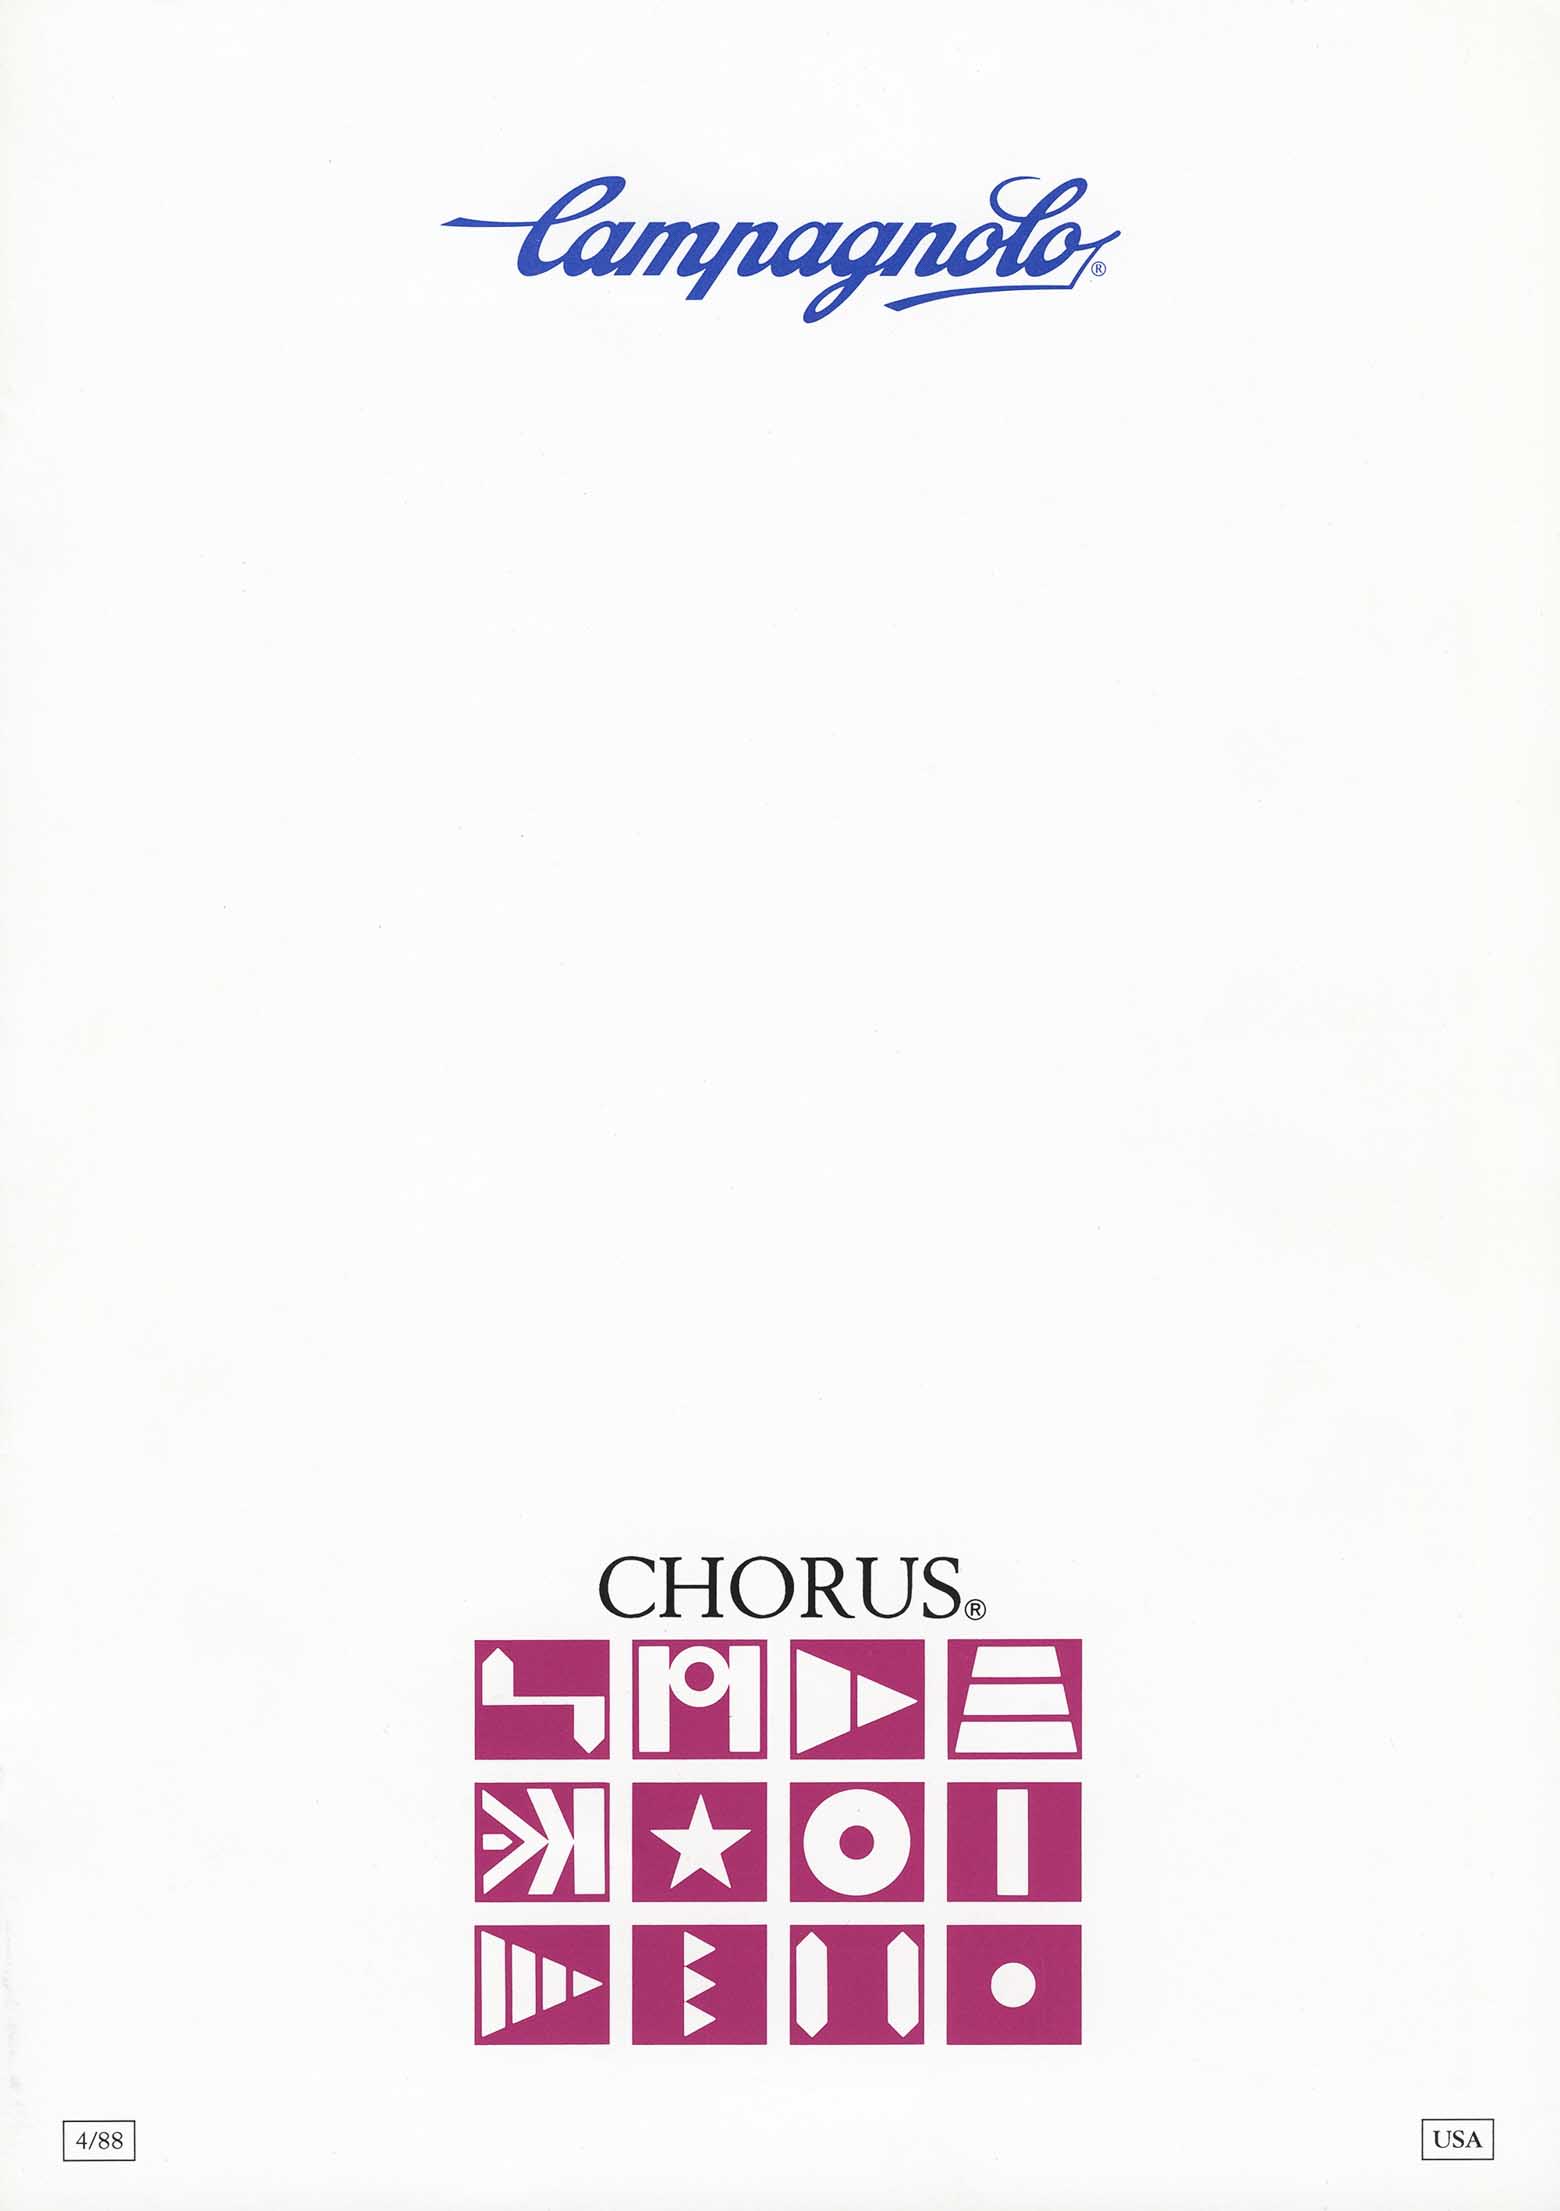 Campagnolo - Chorus scan 01 main image